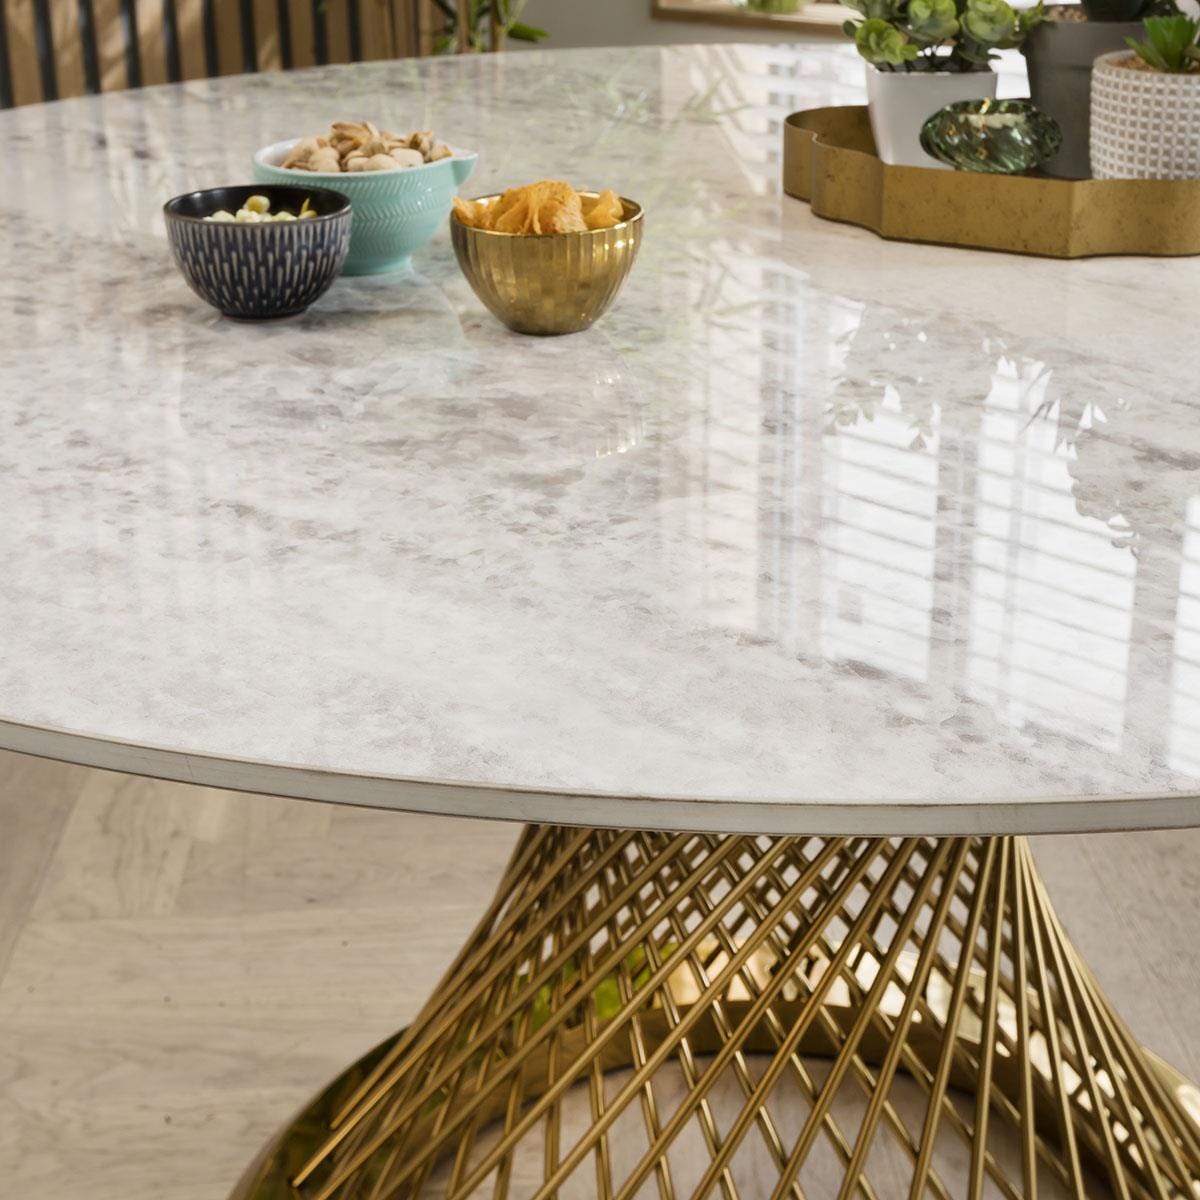 Quatropi Sunburst Ceramic Dining Table - White 135cm